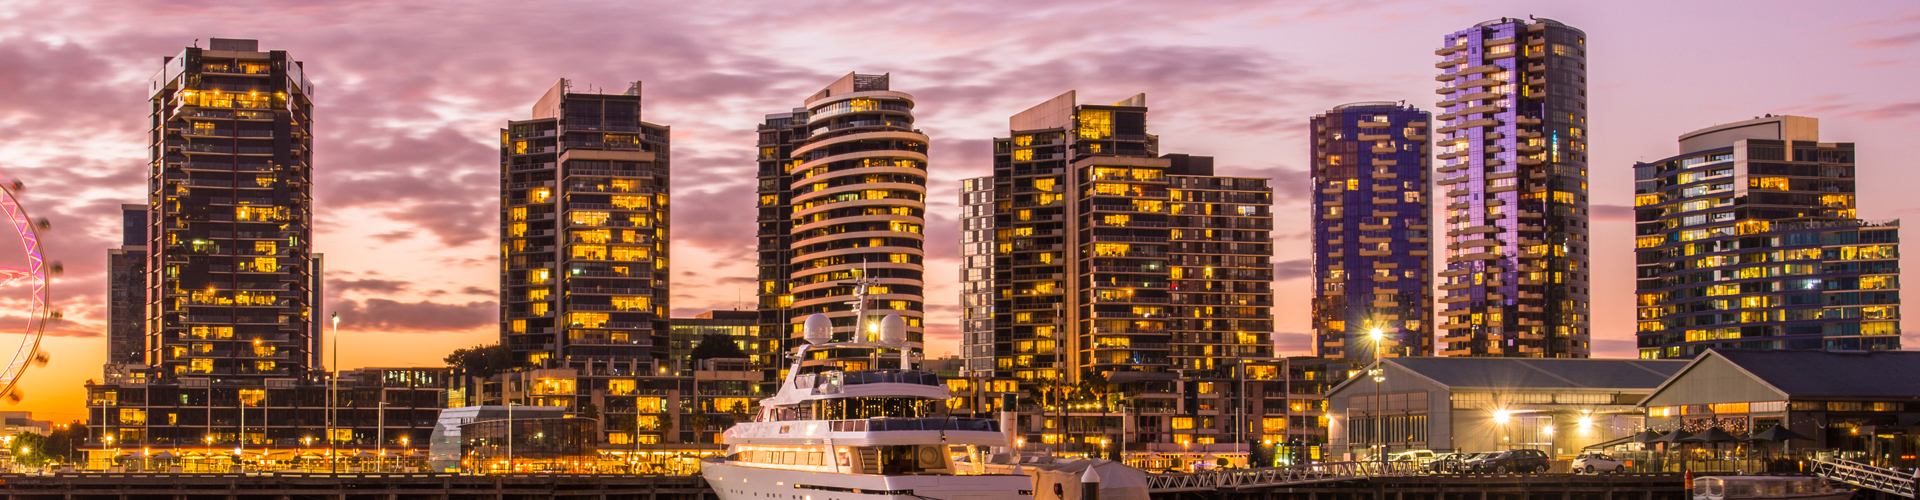 Docklands Melbourne Sunset 1900x500